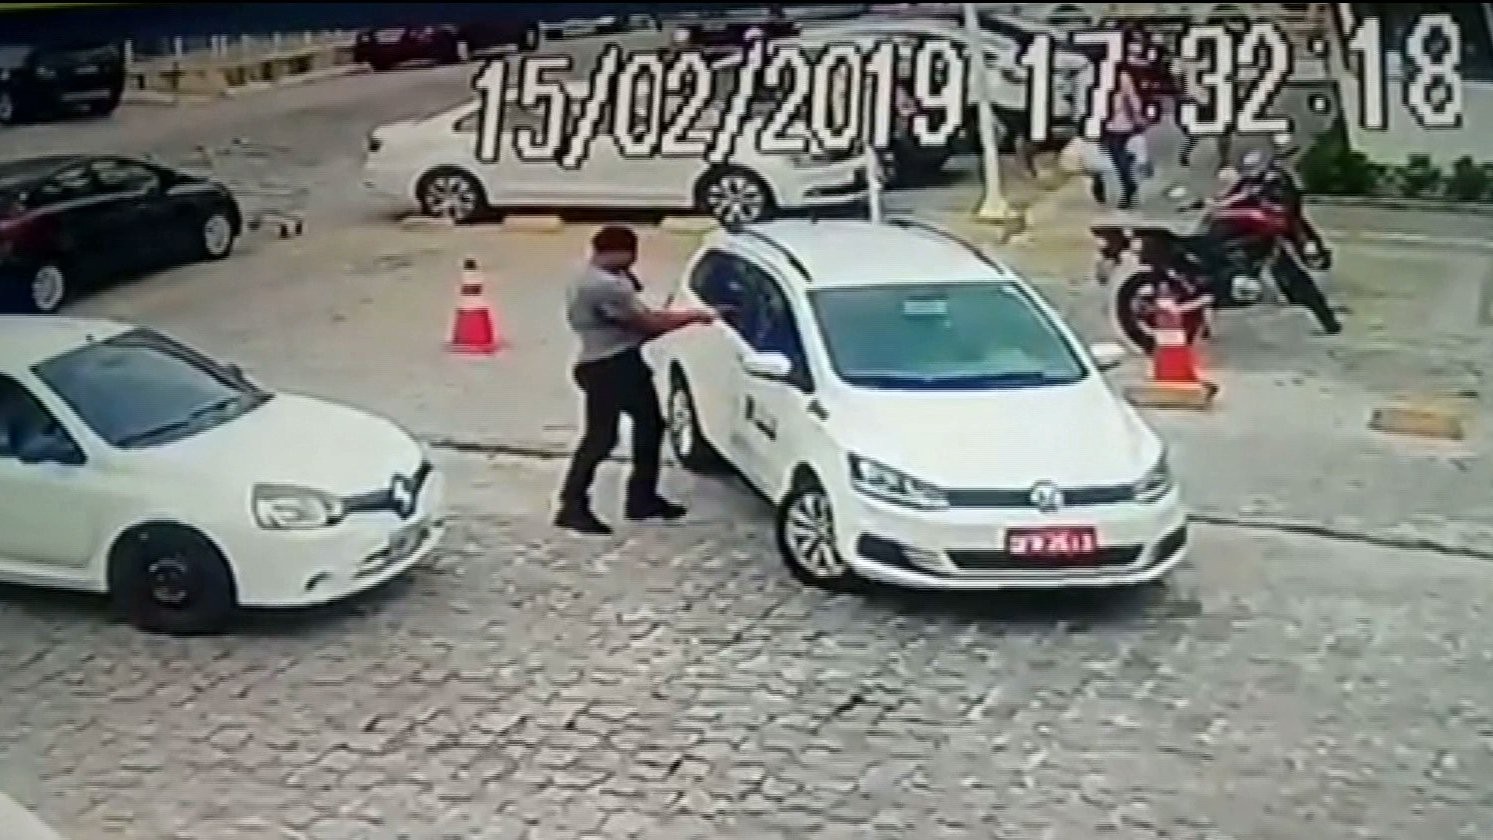 Condenado por matar taxista em discussão de trânsito deixa prisão em João Pessoa